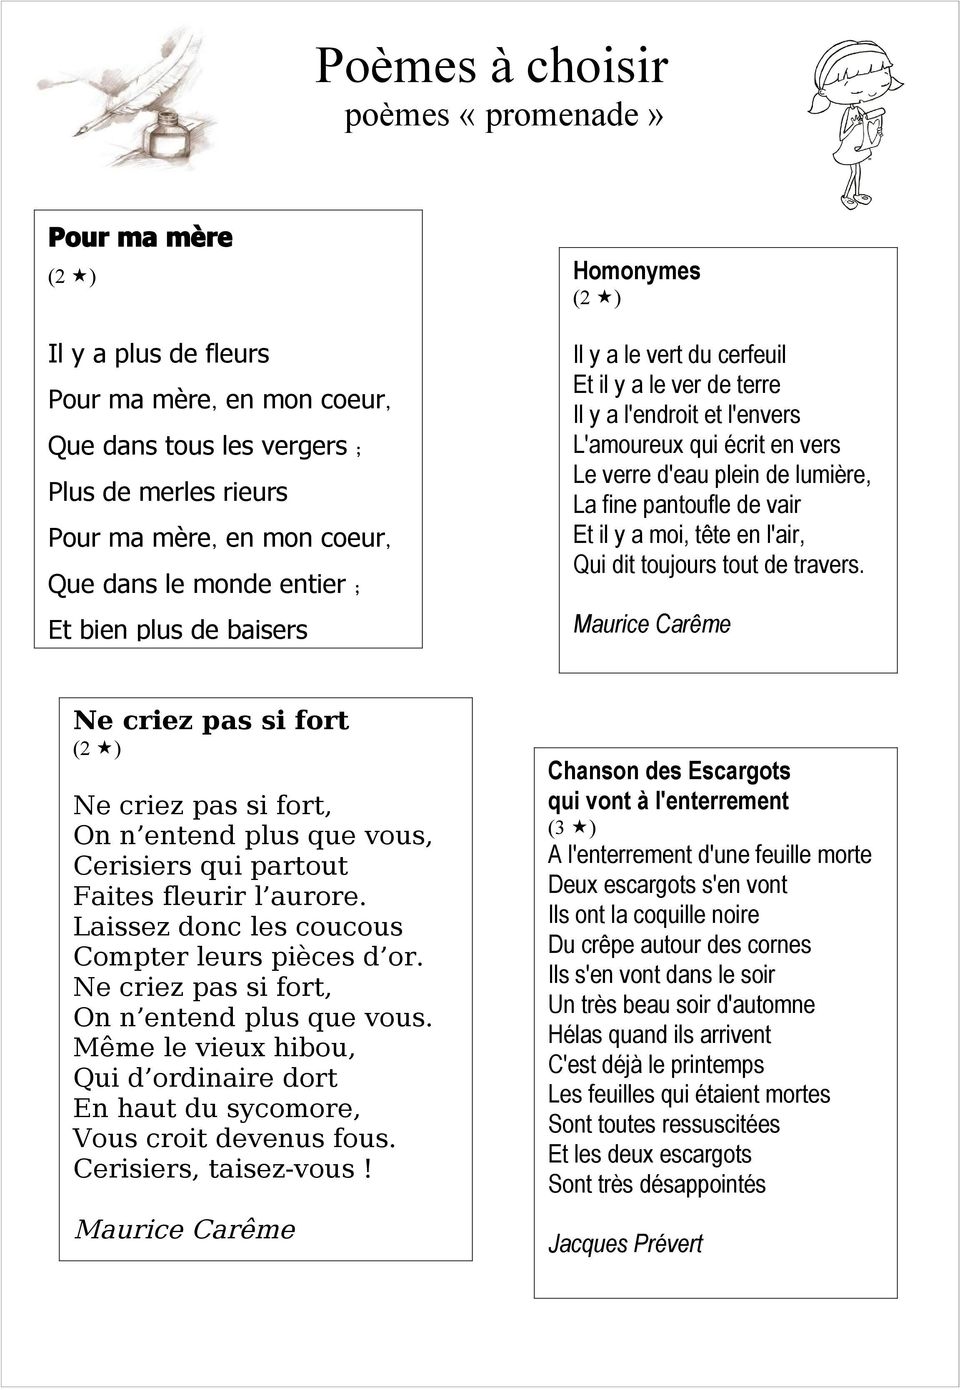 Poèmes à choisir poèmes «promenade» - PDF Téléchargement Gratuit